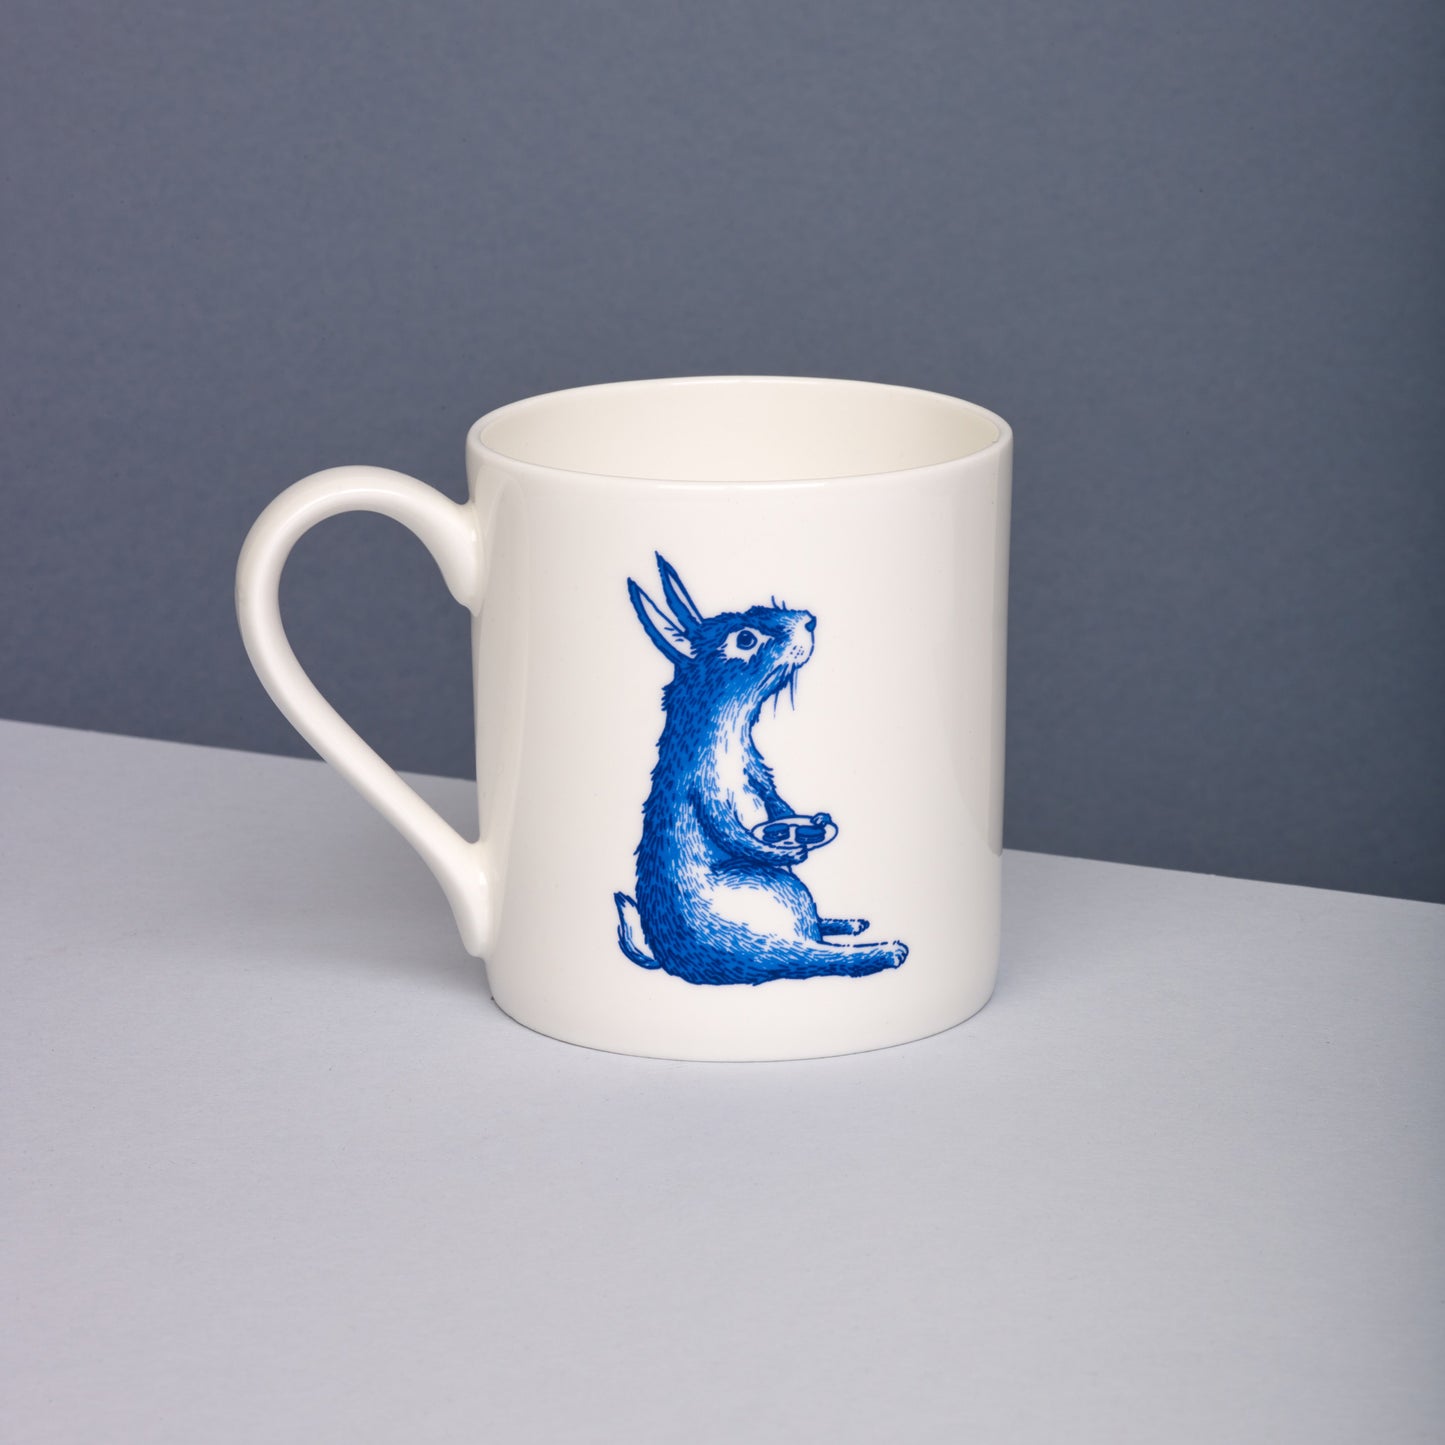 Rabbit Willow pattern mug